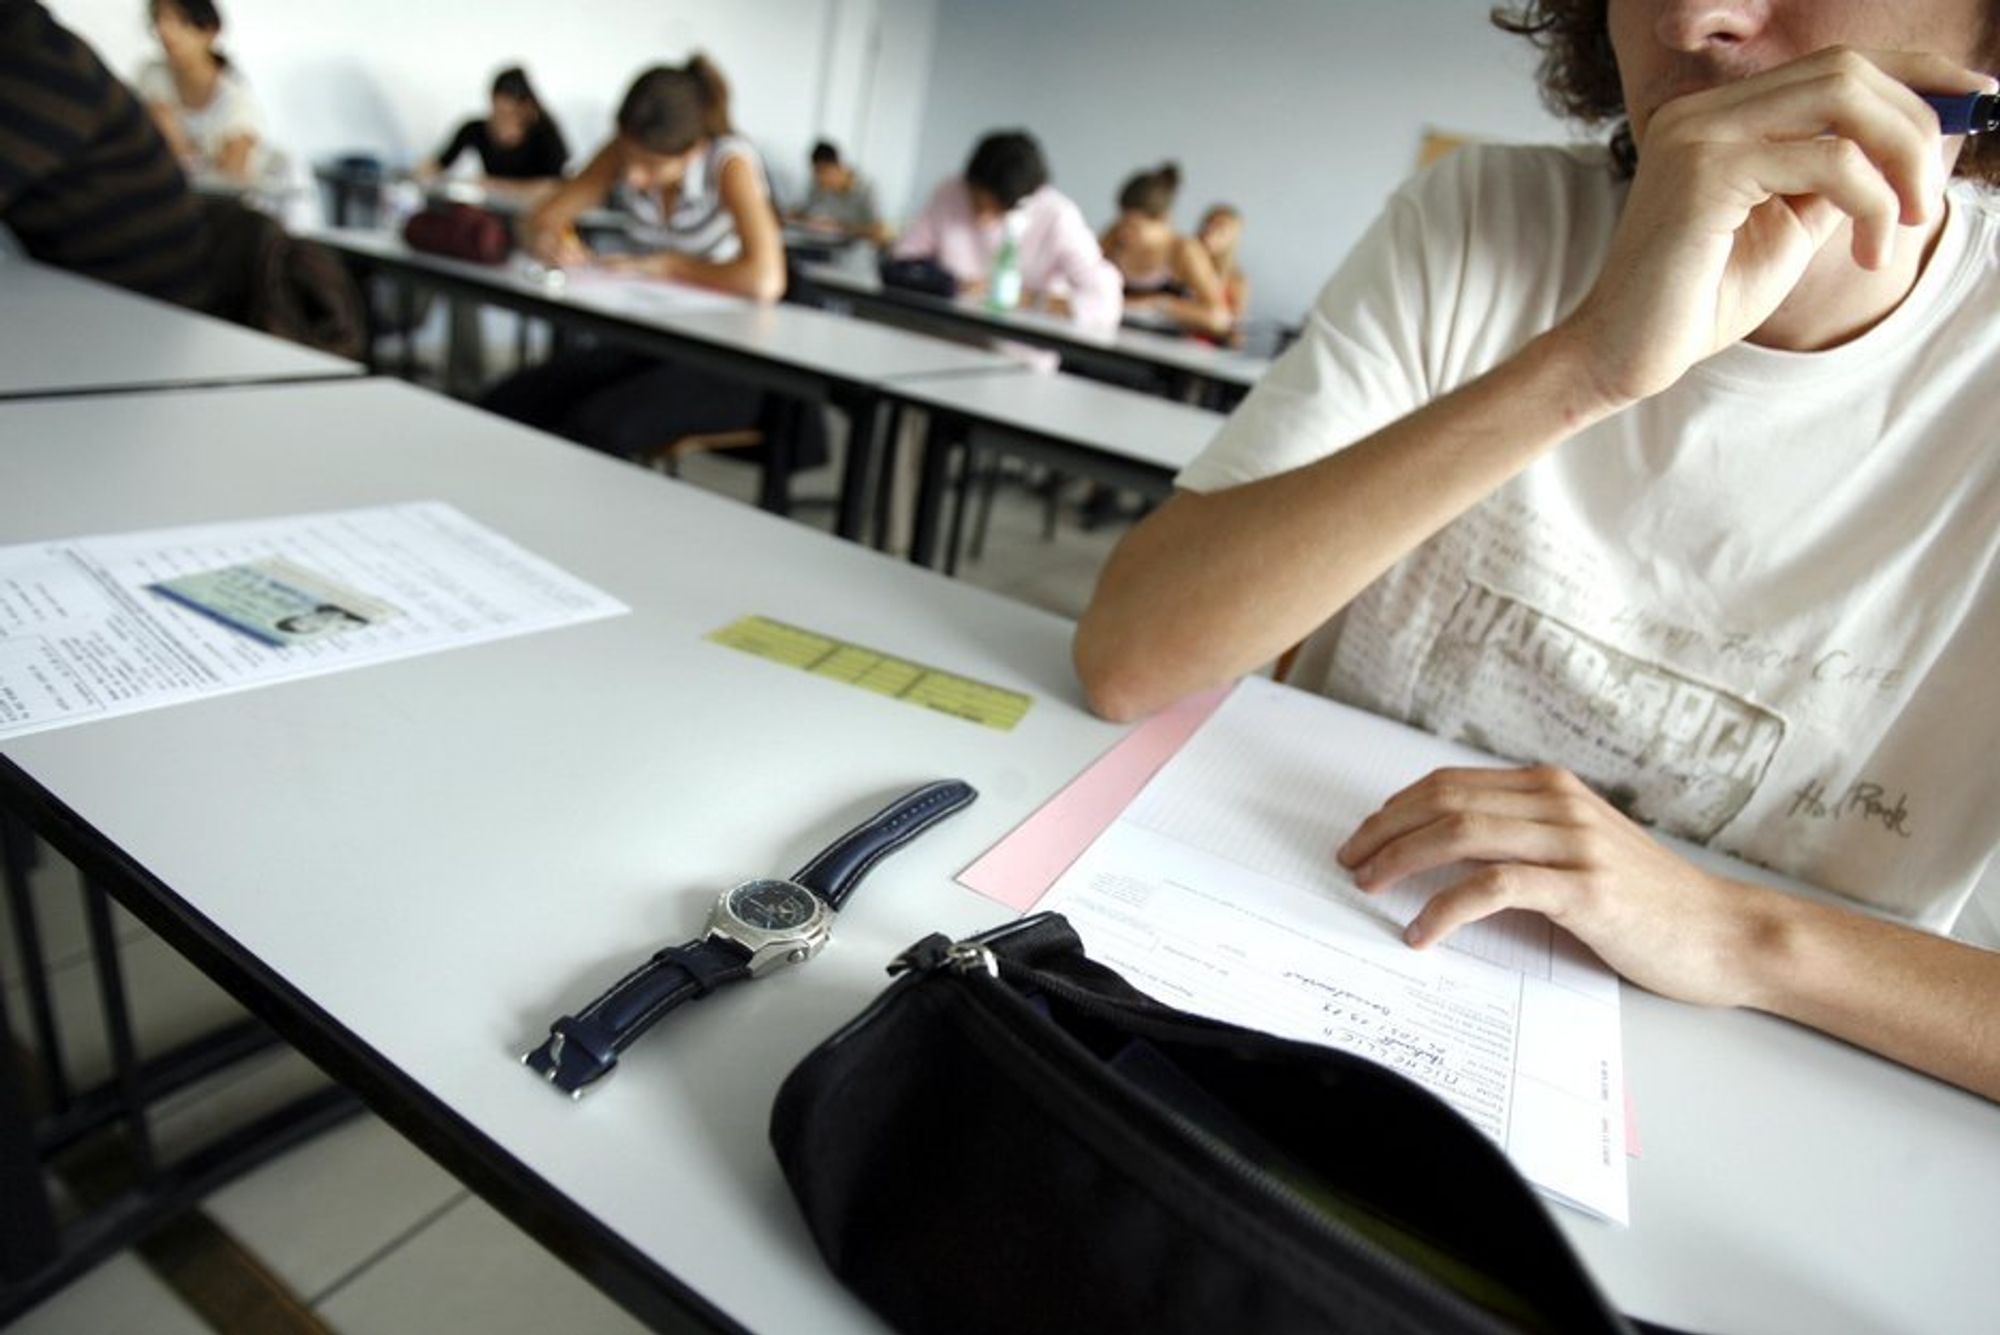 PRESS: Én av 20 studenter innrømmer at de jukser på eksamen. Hvor mange som IKKE innrømmer juks, er naturligvis ukjent.